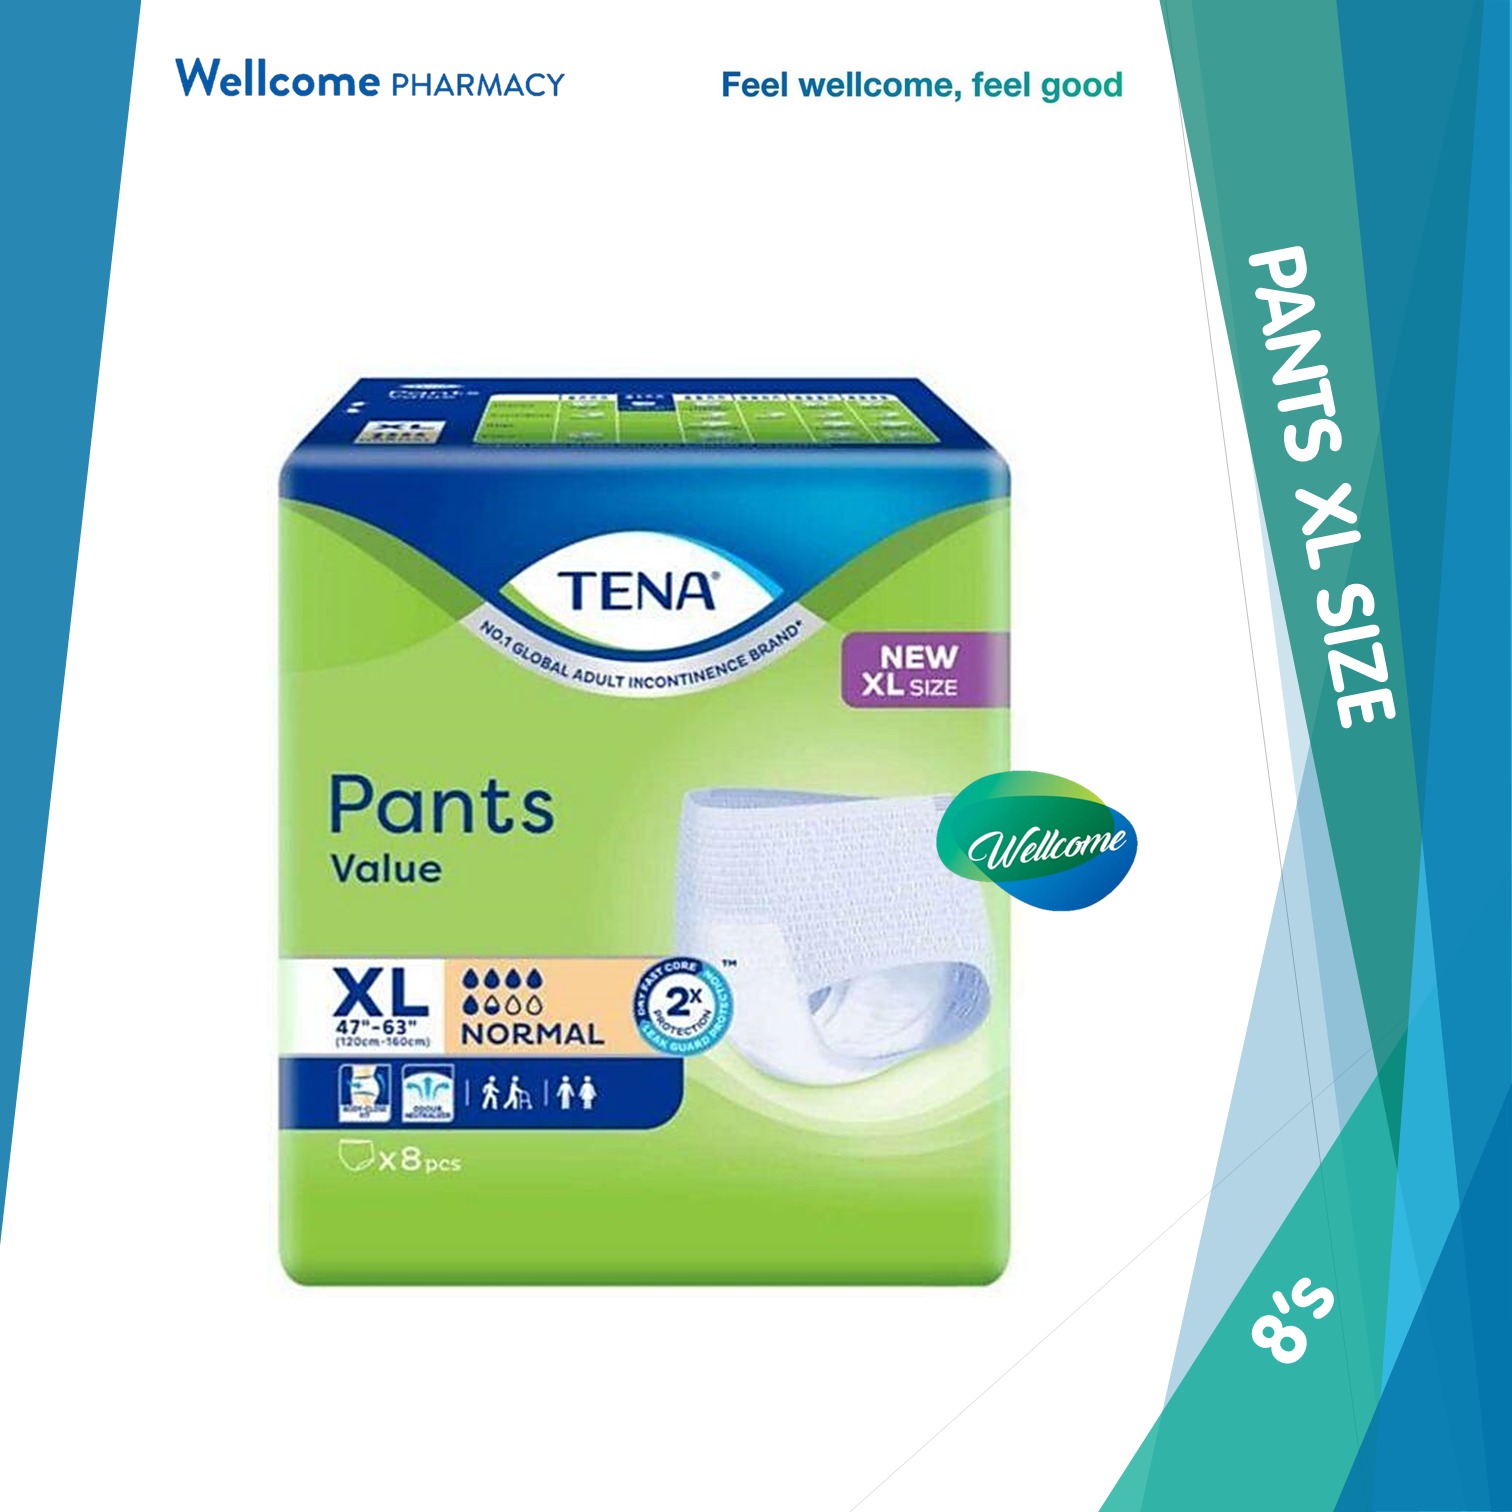 Tena Value Pants XL - 8s.png